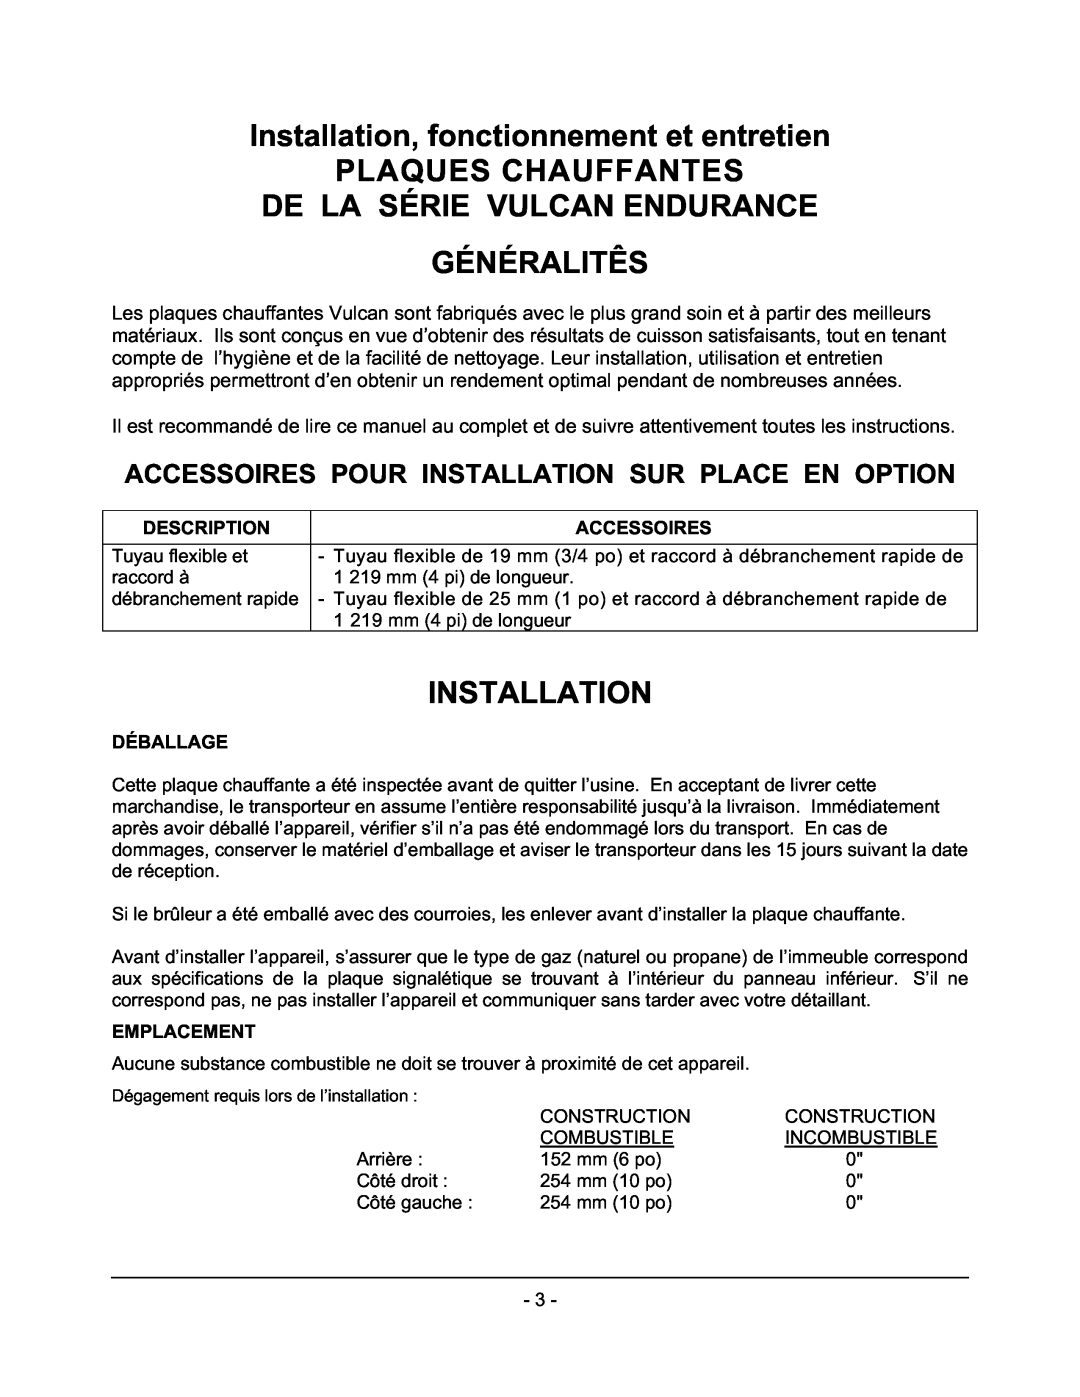 Vulcan-Hart GCT36 Installation, fonctionnement et entretien, Plaques Chauffantes De La Série Vulcan Endurance, Généralitês 